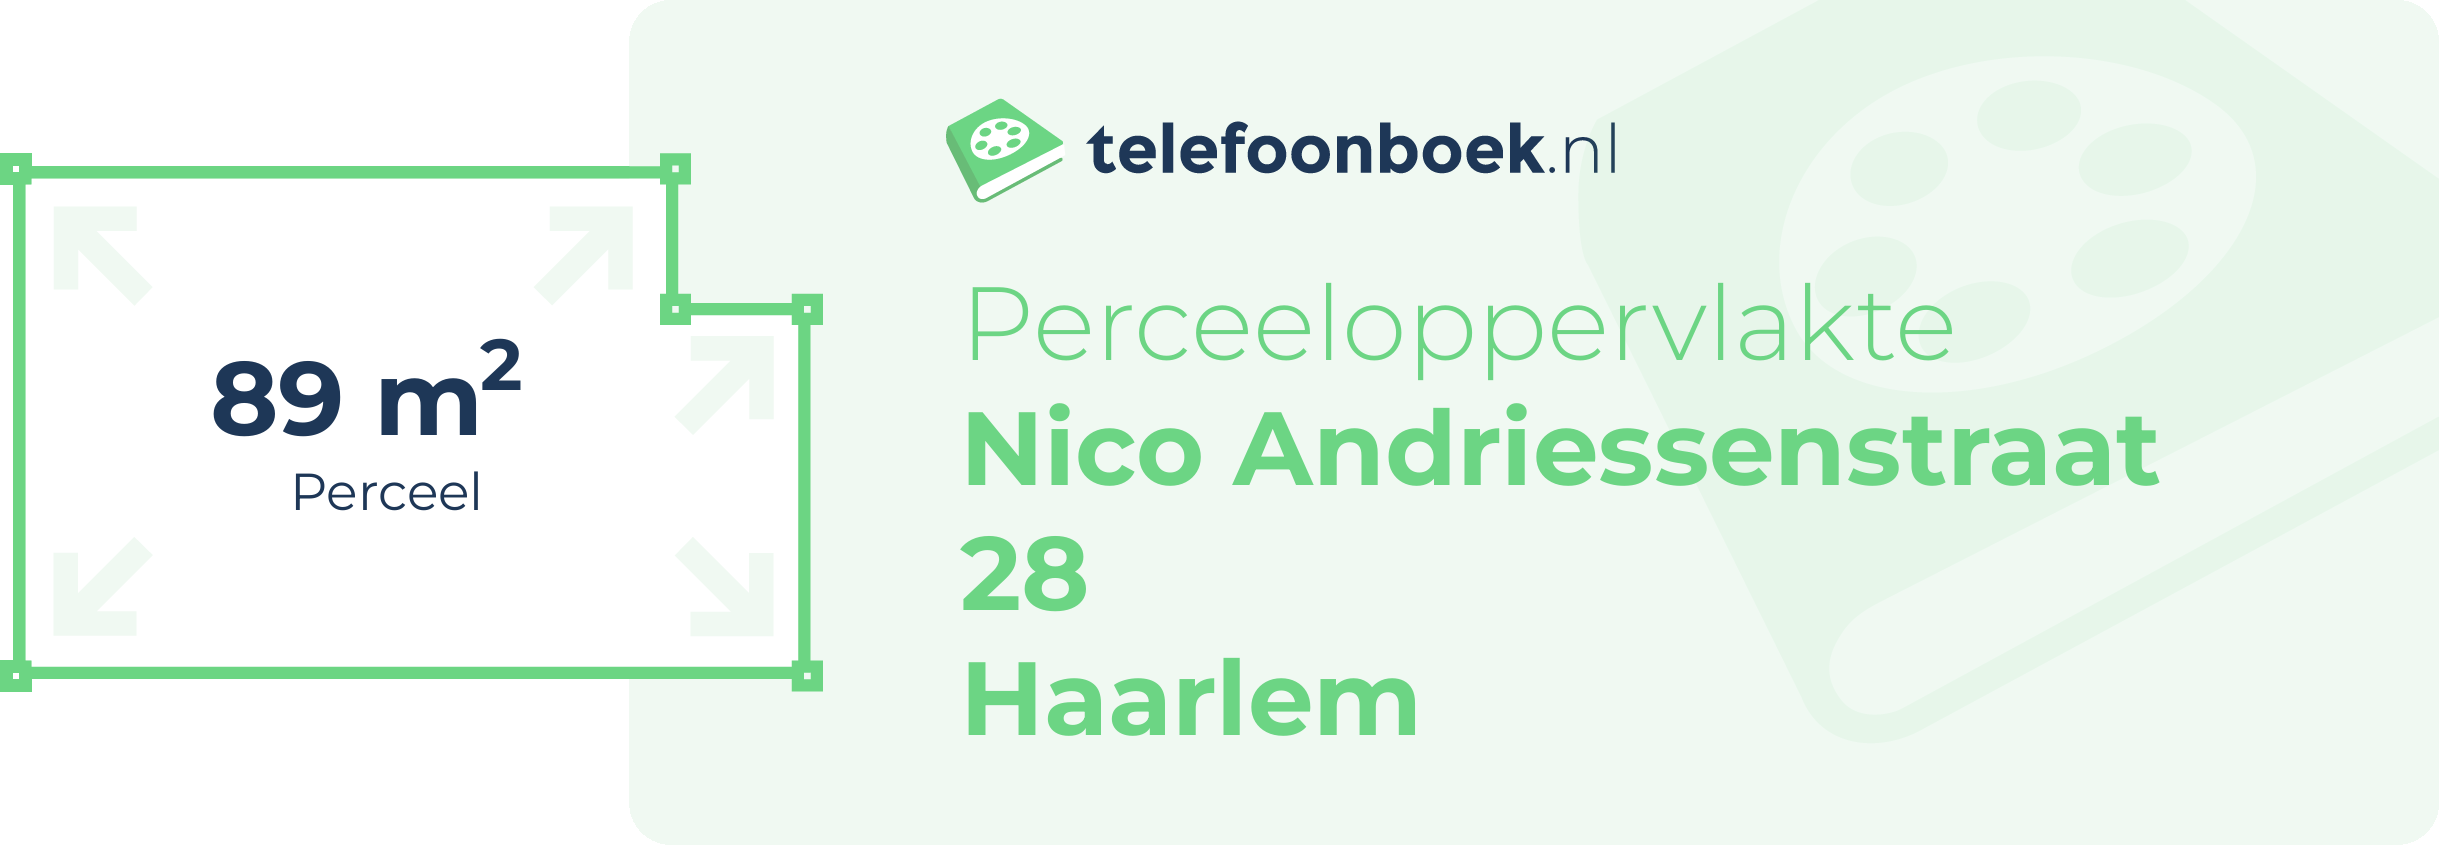 Perceeloppervlakte Nico Andriessenstraat 28 Haarlem